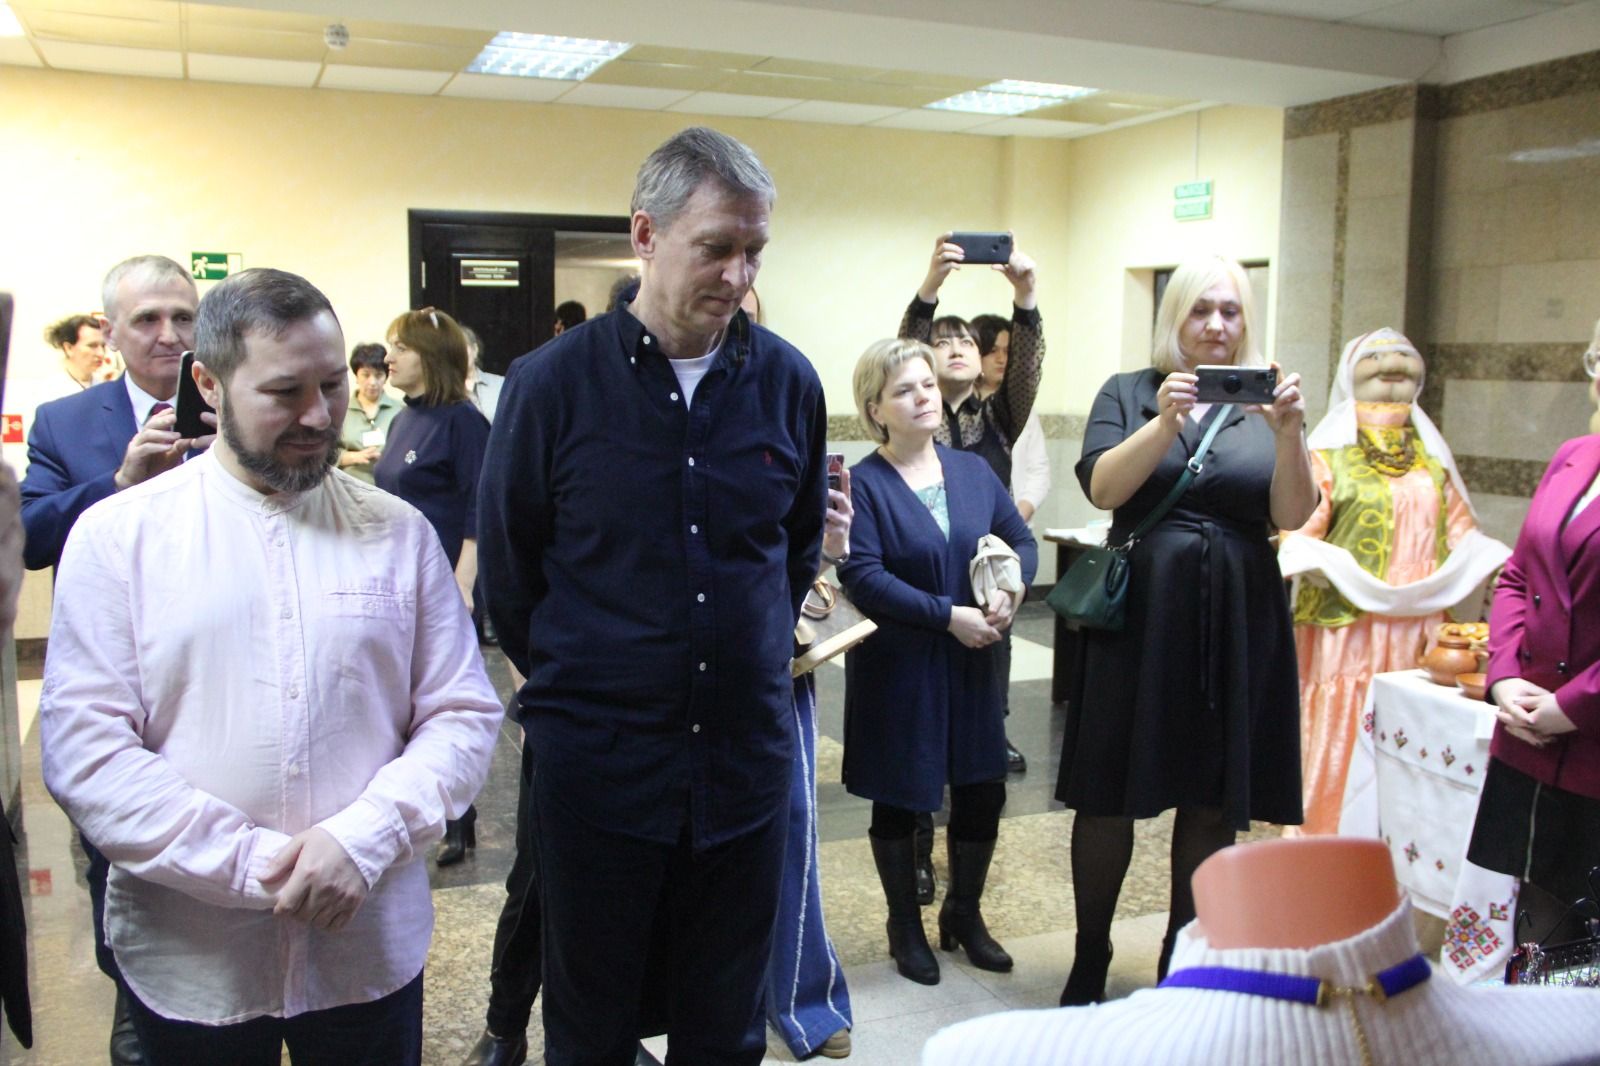 В Болгаре прошёл зональный этап республиканского конкурса «Без бергэ»